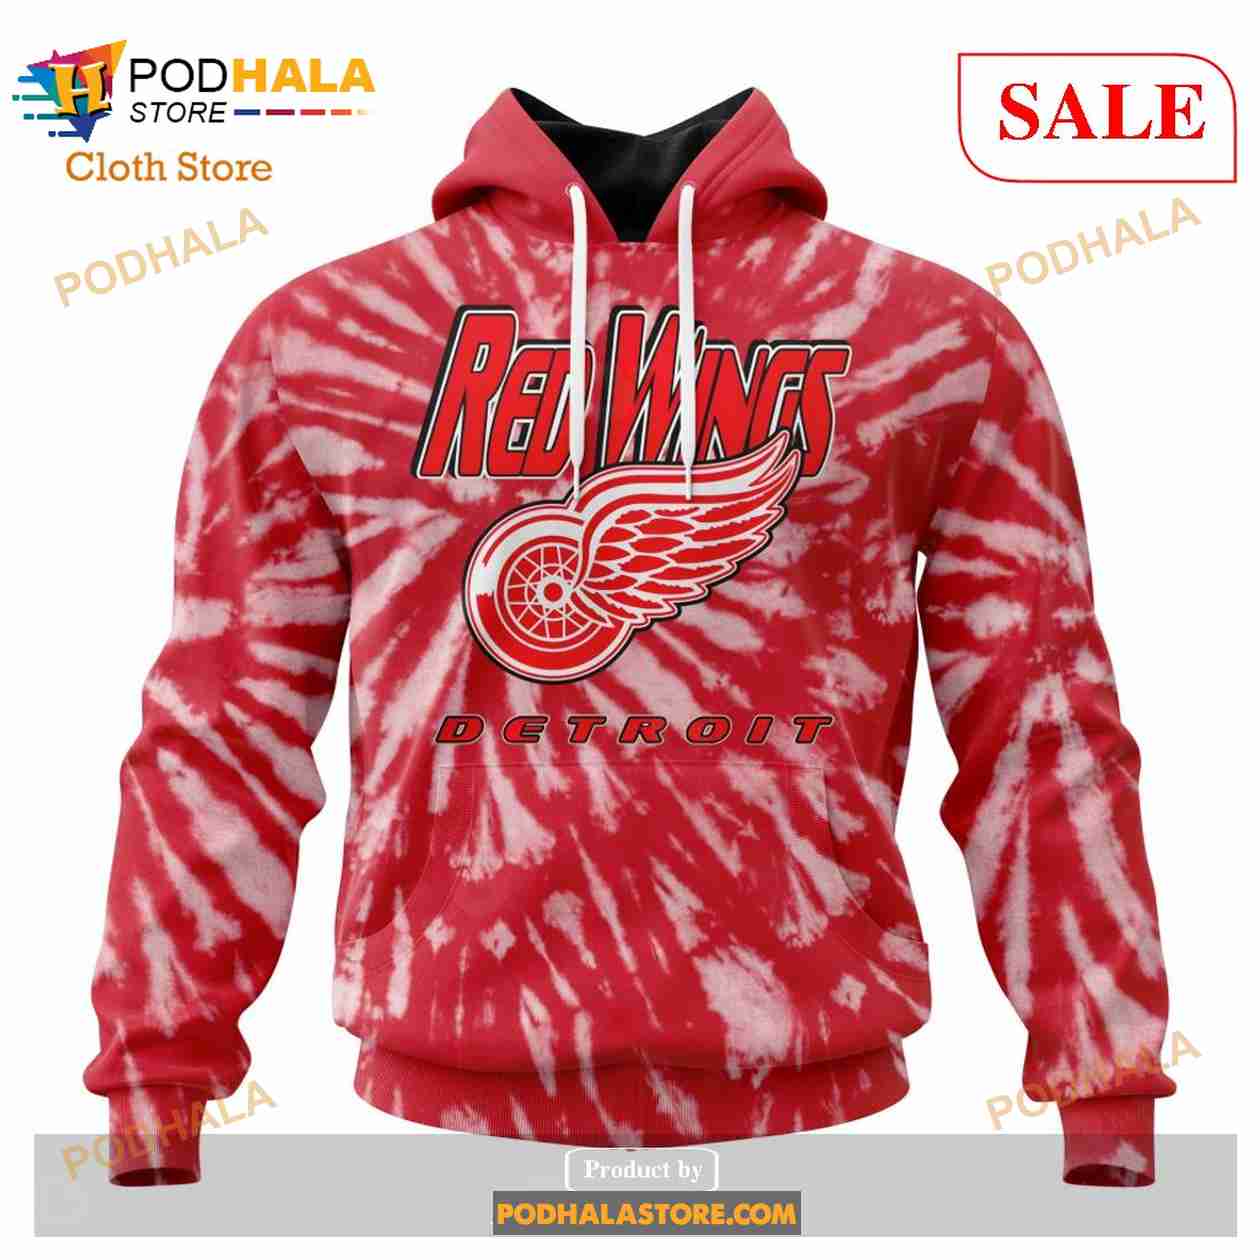 Detroit Red Wings Sweatshirt, Retro Hockey Sweatshirt Gift Fan All Size  S-3XL